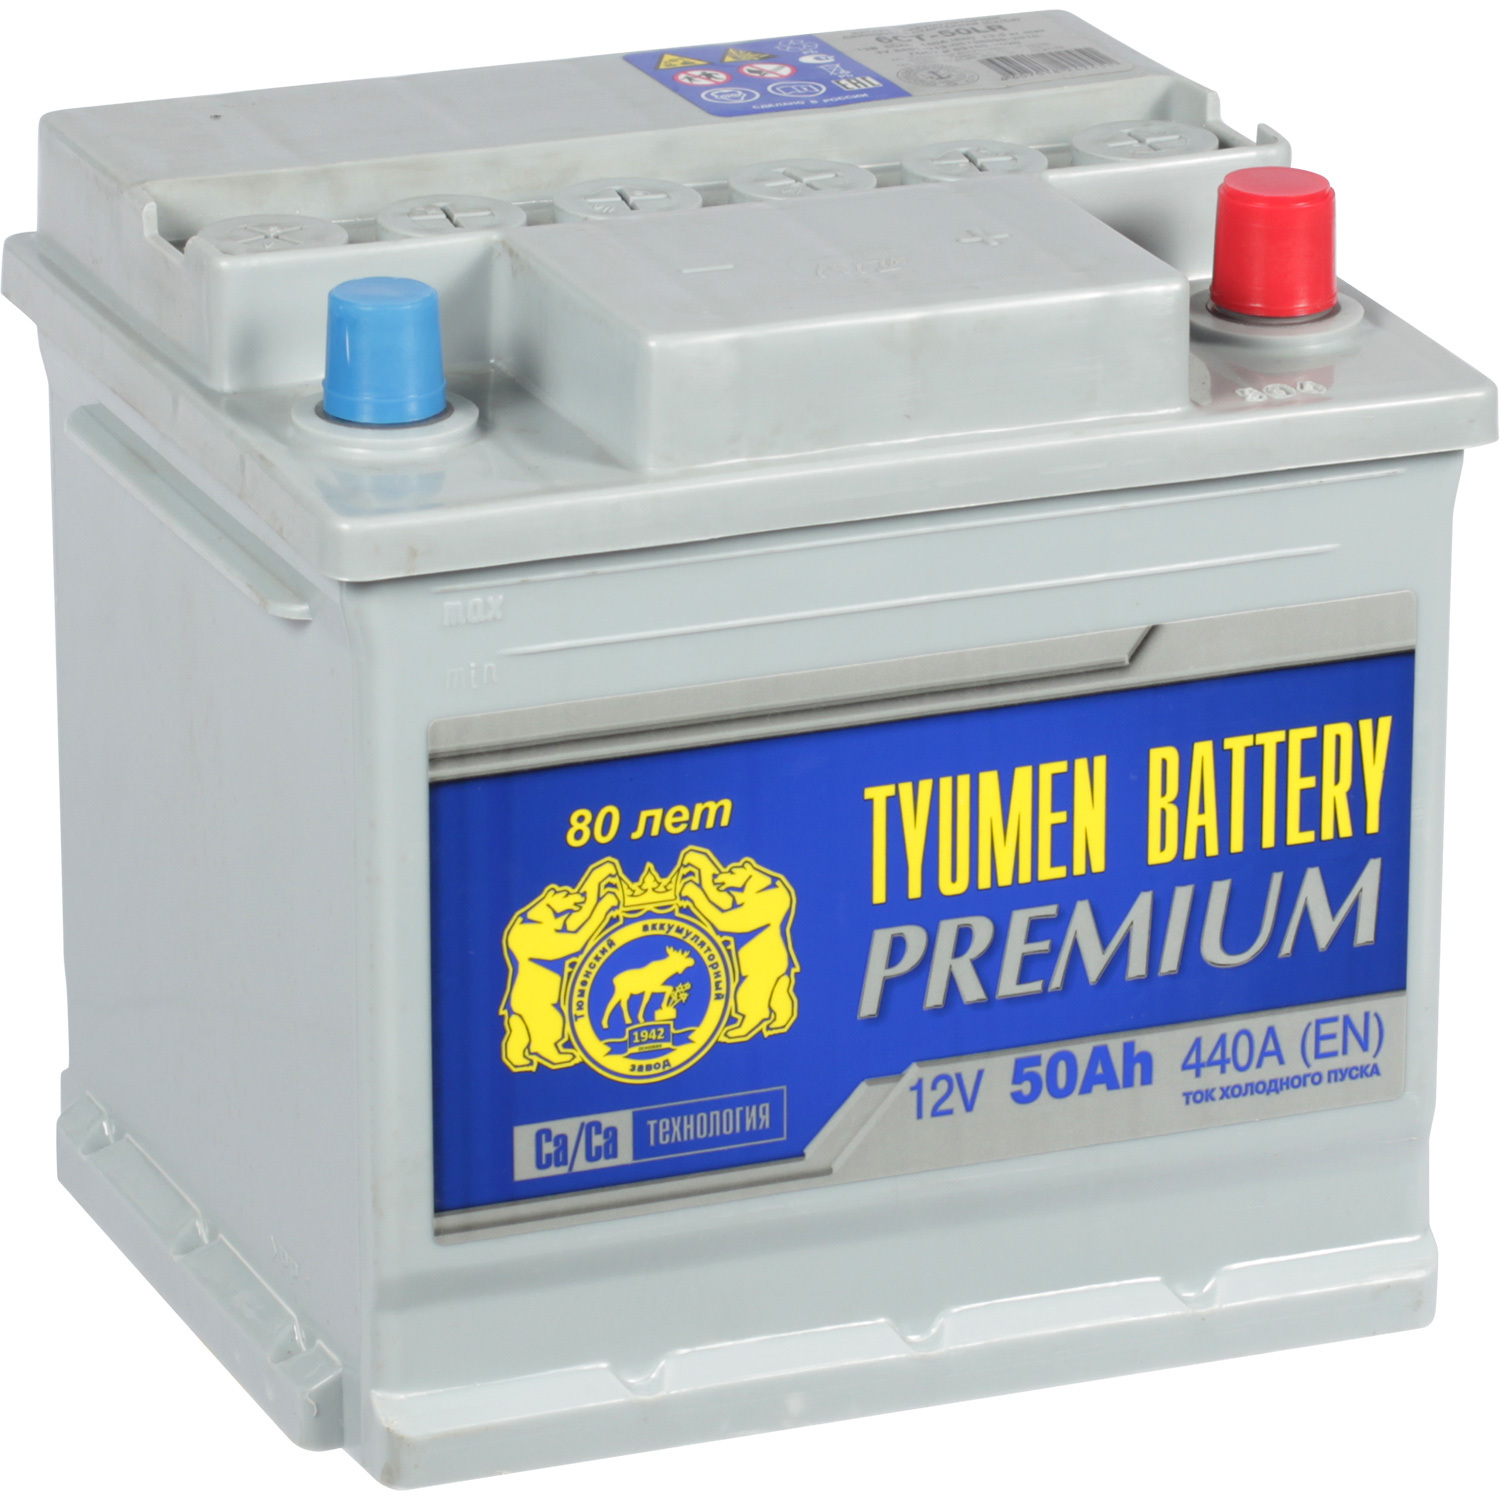 Tyumen Battery Автомобильный аккумулятор Tyumen Battery Premium 50 Ач обратная полярность L1 tyumen batbear автомобильный аккумулятор tyumen batbear 55 ач обратная полярность l1